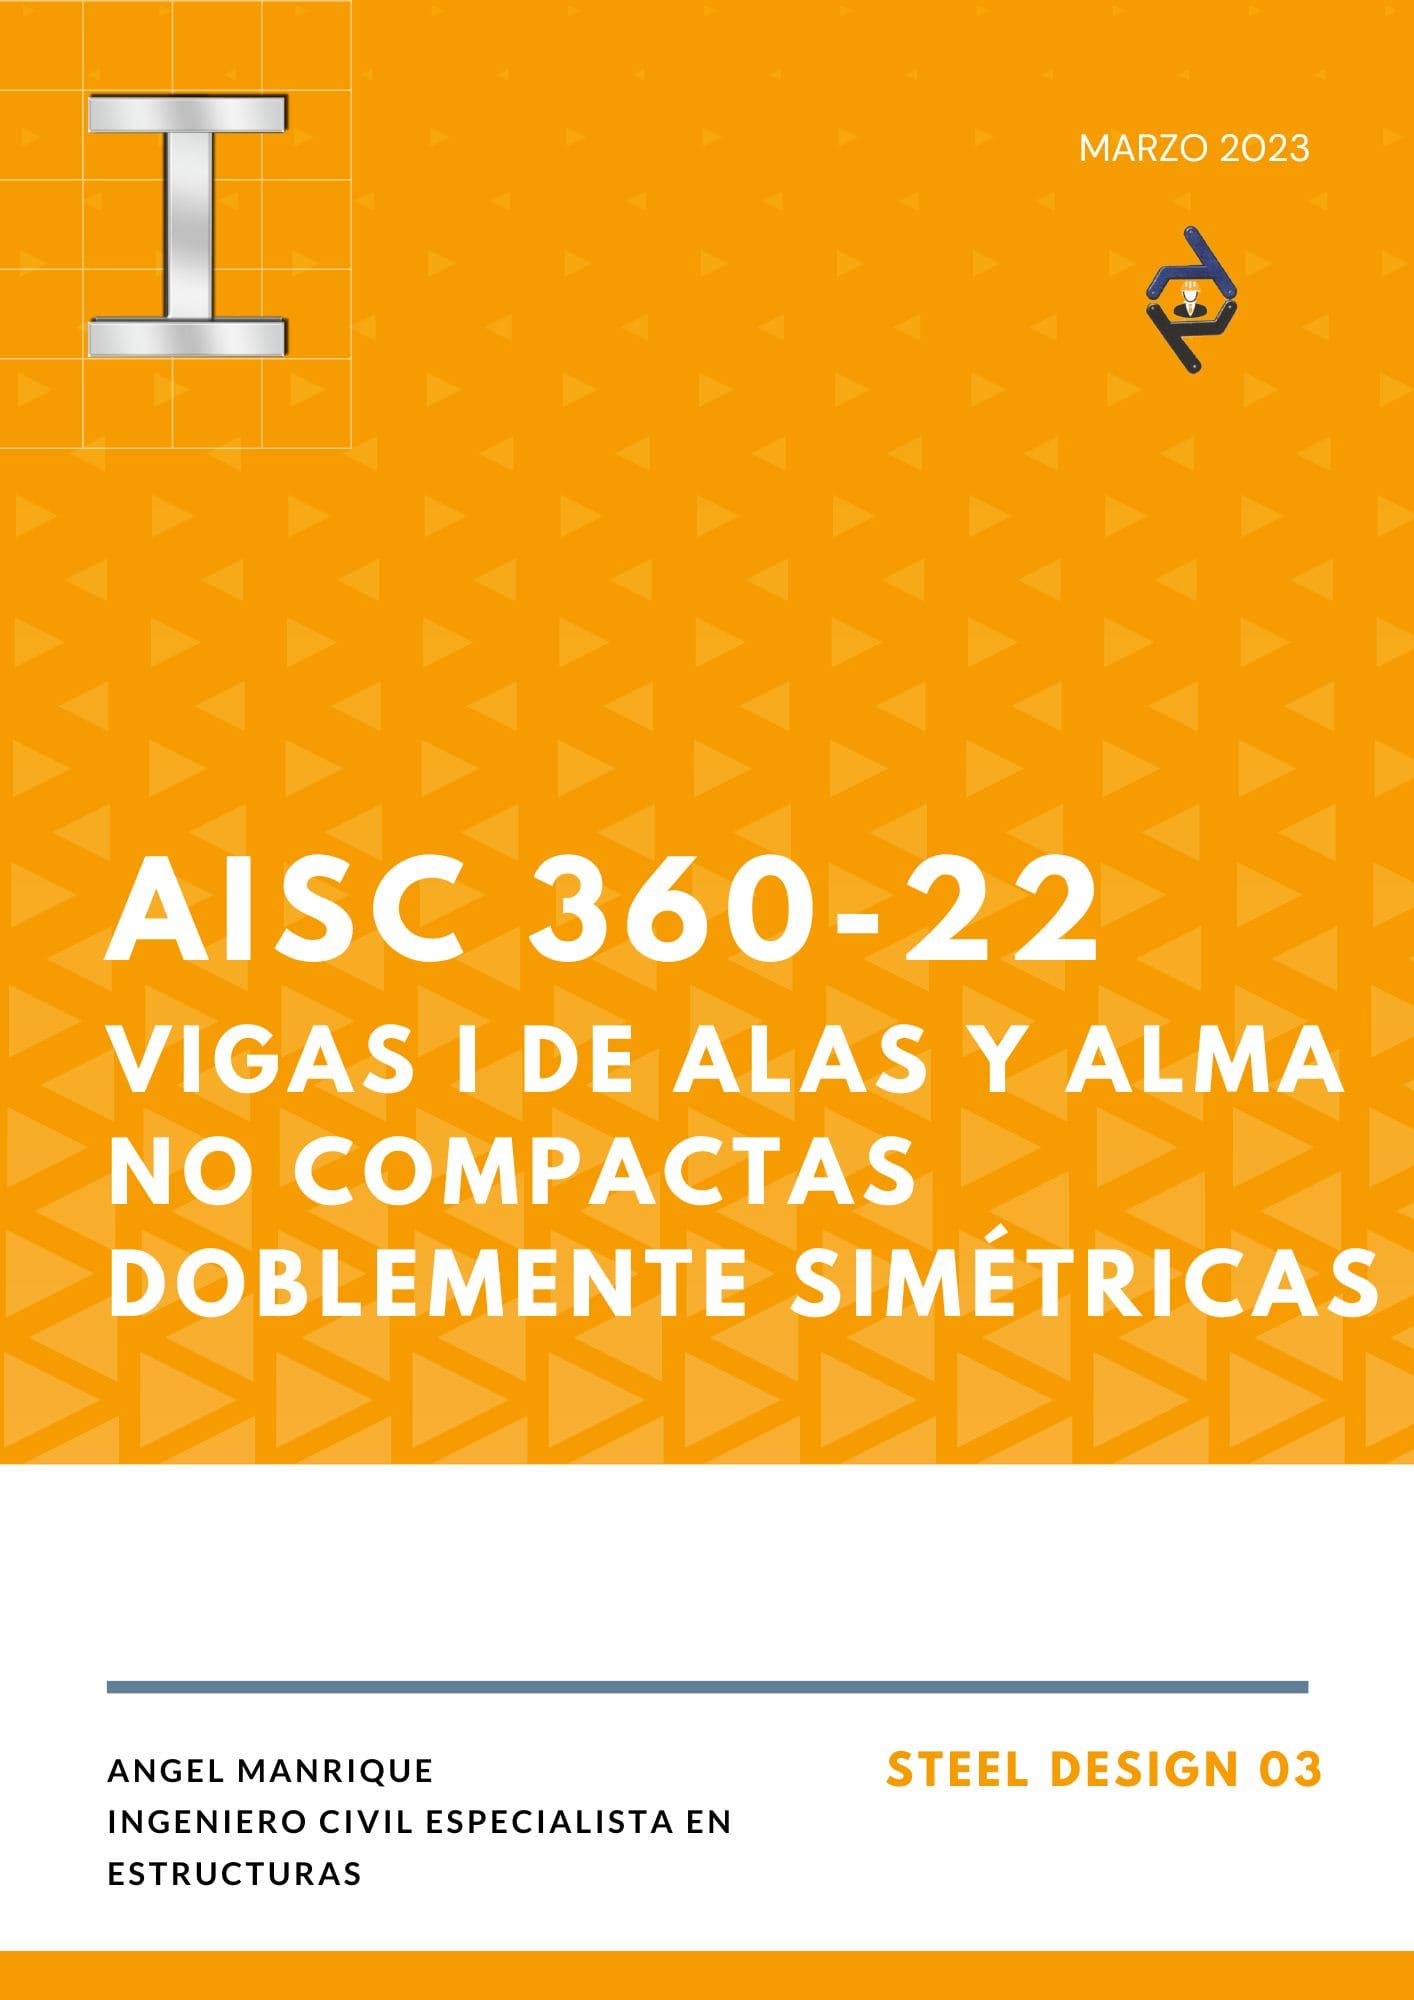 STEEL DESIGN 03. VIGAS I DE ALAS Y ALMA NO COMPACTAS DOBLEMENTE SIMÉTRICAS. AISC 360-22